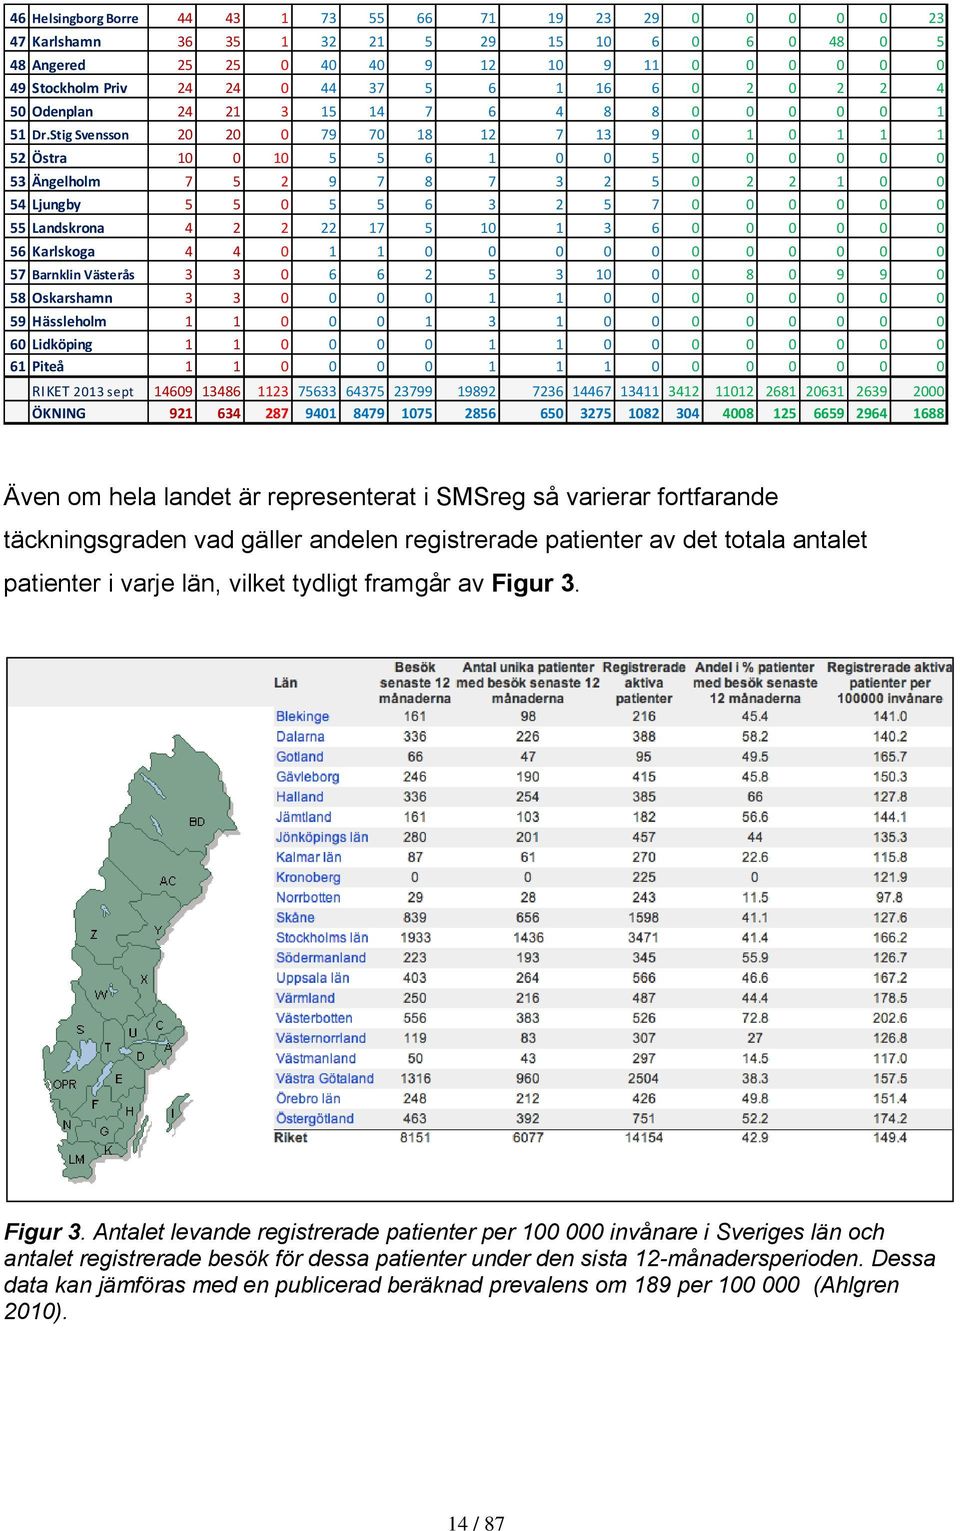 Stig Svensson 20 20 0 79 70 18 12 7 13 9 0 1 0 1 1 1 52 Östra 10 0 10 5 5 6 1 0 0 5 0 0 0 0 0 0 53 Ängelholm 7 5 2 9 7 8 7 3 2 5 0 2 2 1 0 0 54 Ljungby 5 5 0 5 5 6 3 2 5 7 0 0 0 0 0 0 55 Landskrona 4